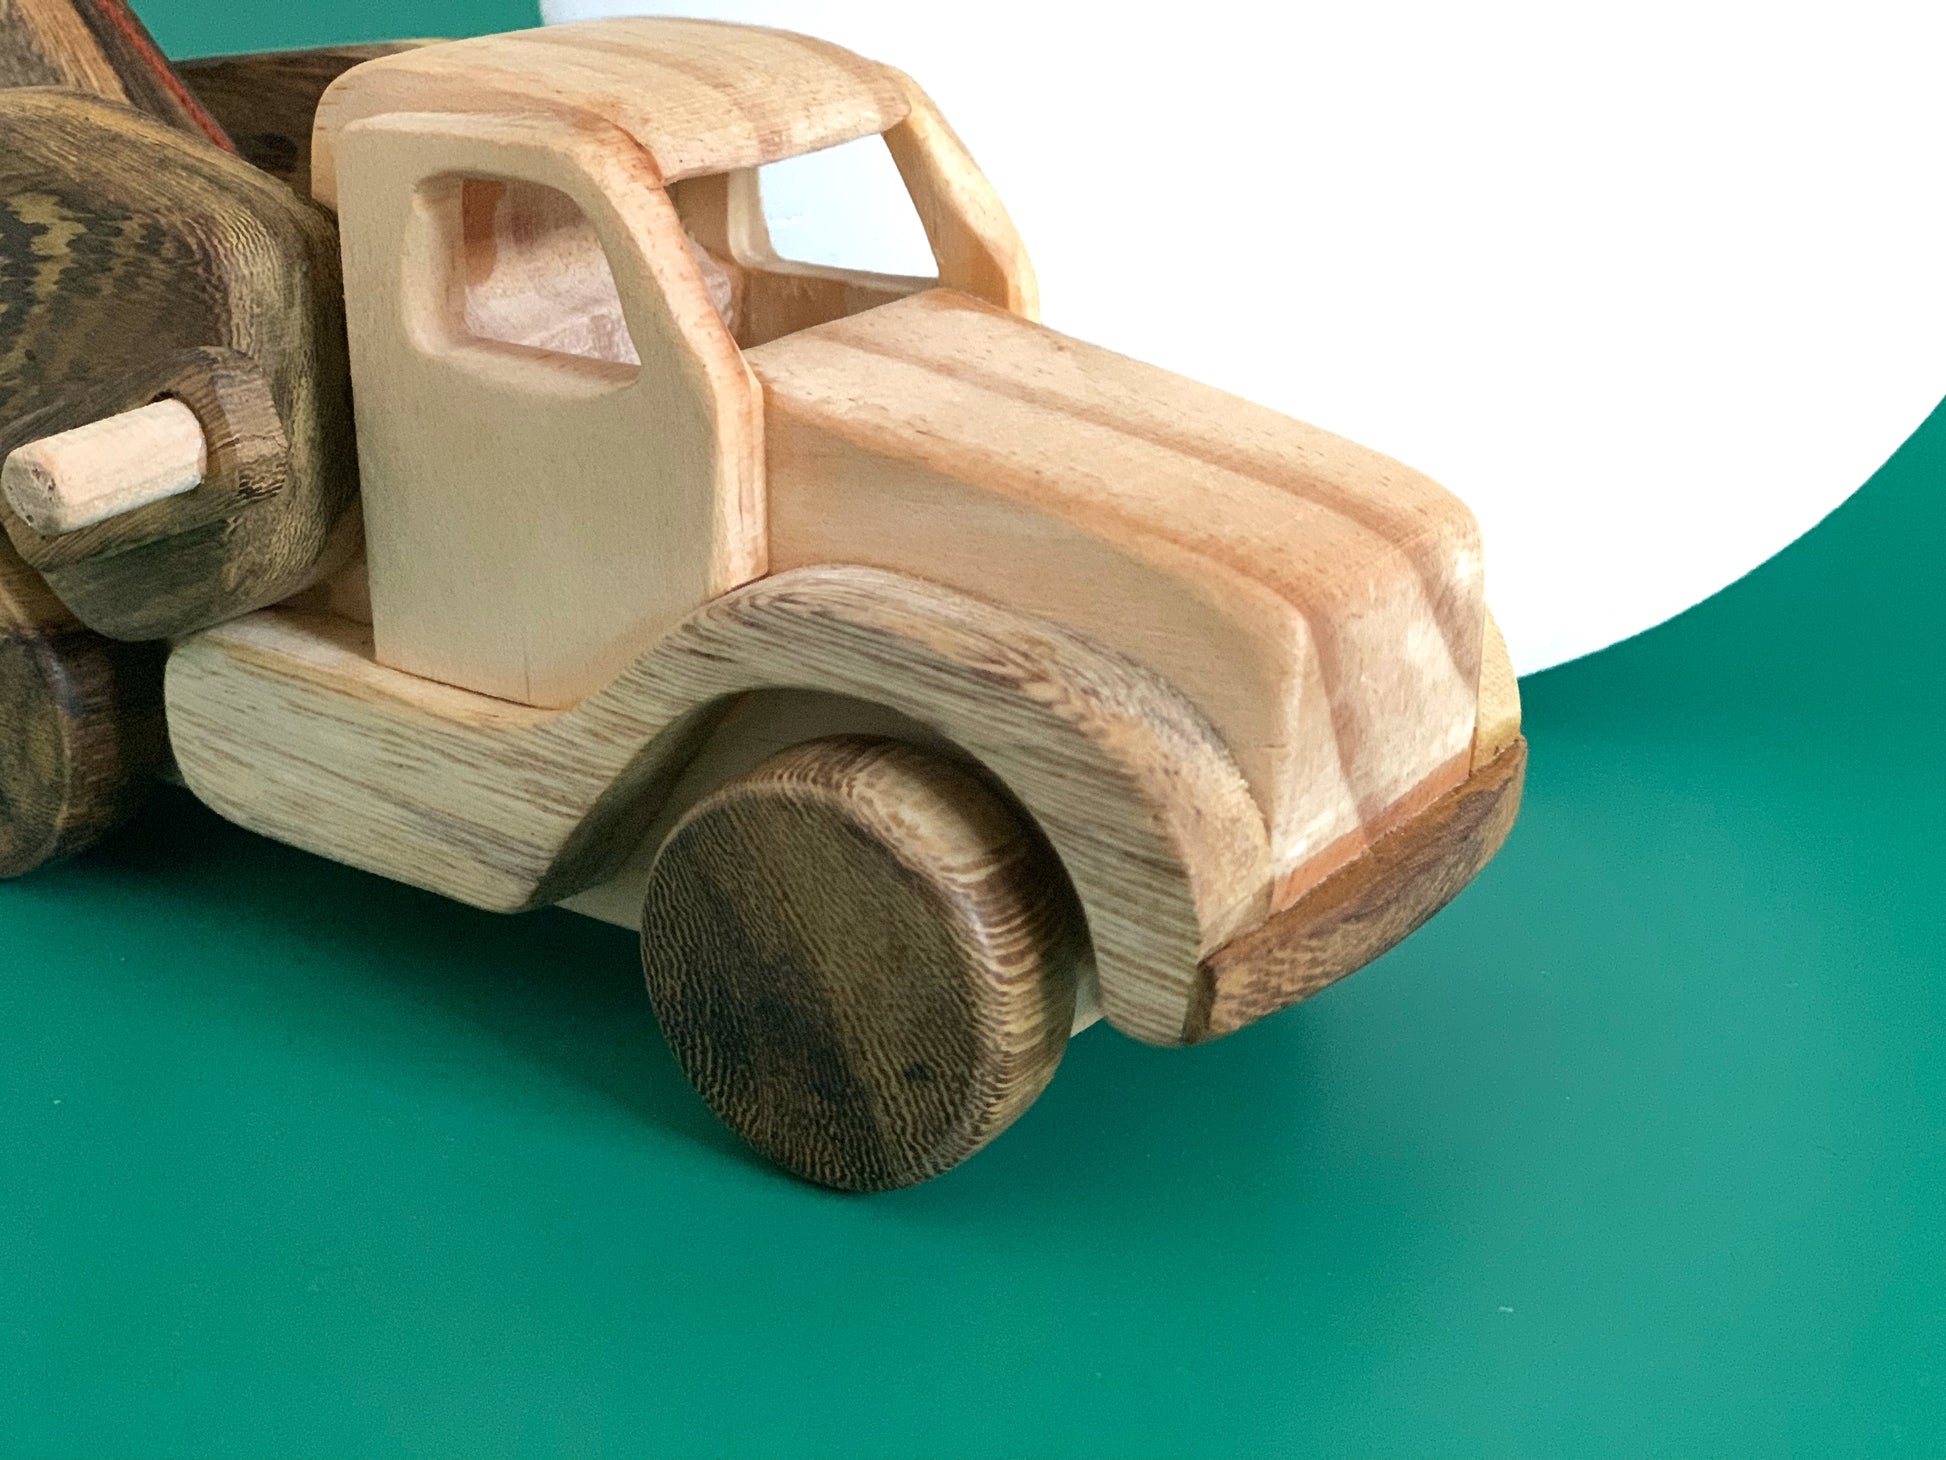 Crane Truck - My first wooden toy